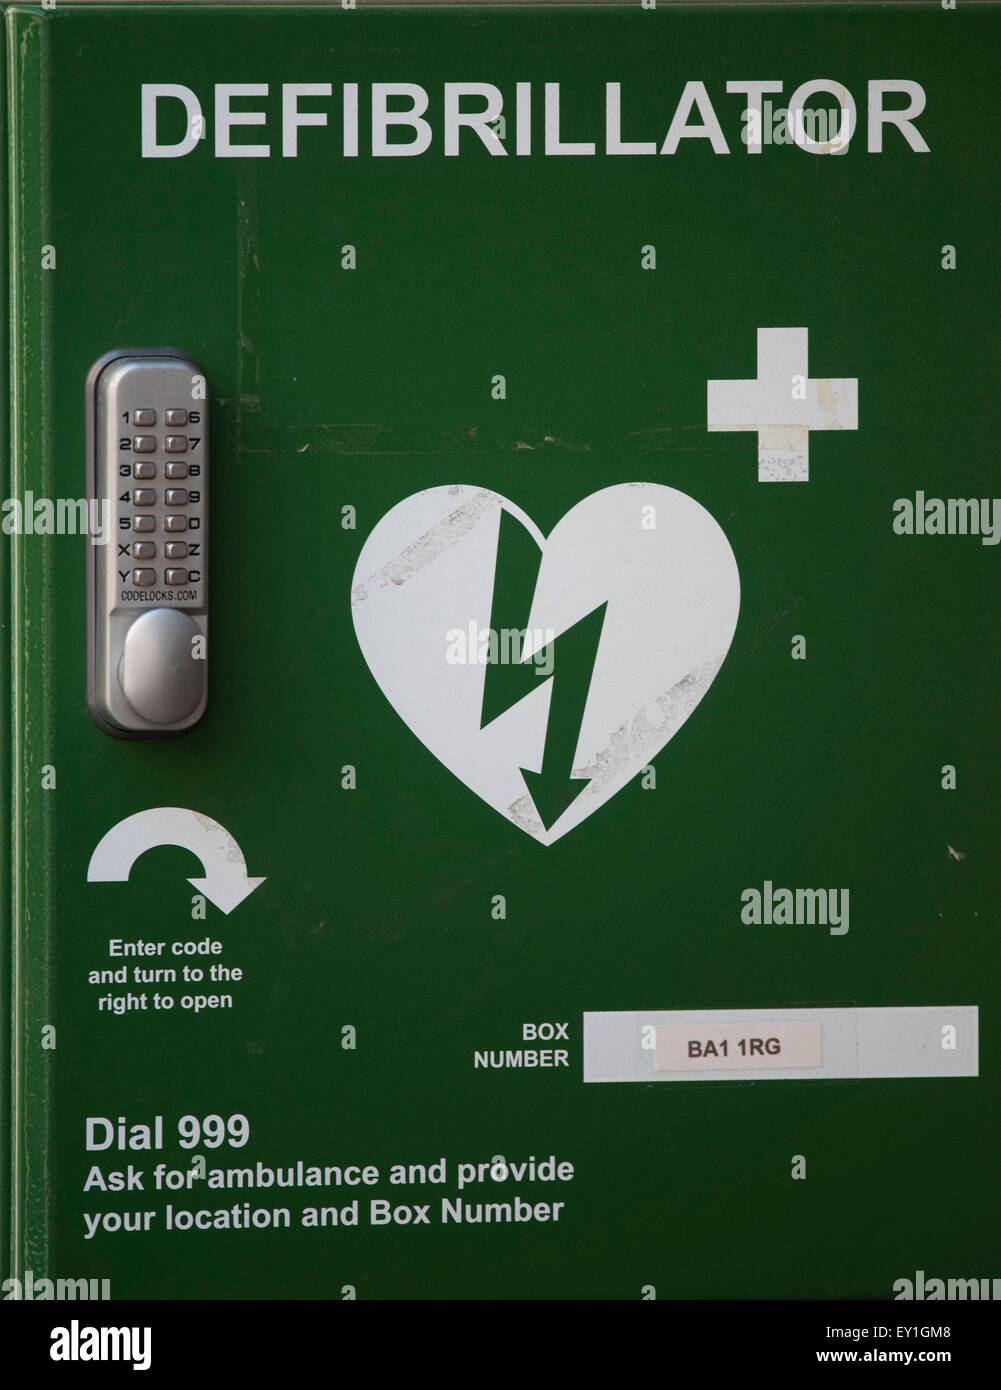 Un segno del defibrillatore. I defibrillatori siano utilizzati per stabilizzare un battito cardiaco irregolare. e si trovano spesso in aree pubbliche. Foto Stock